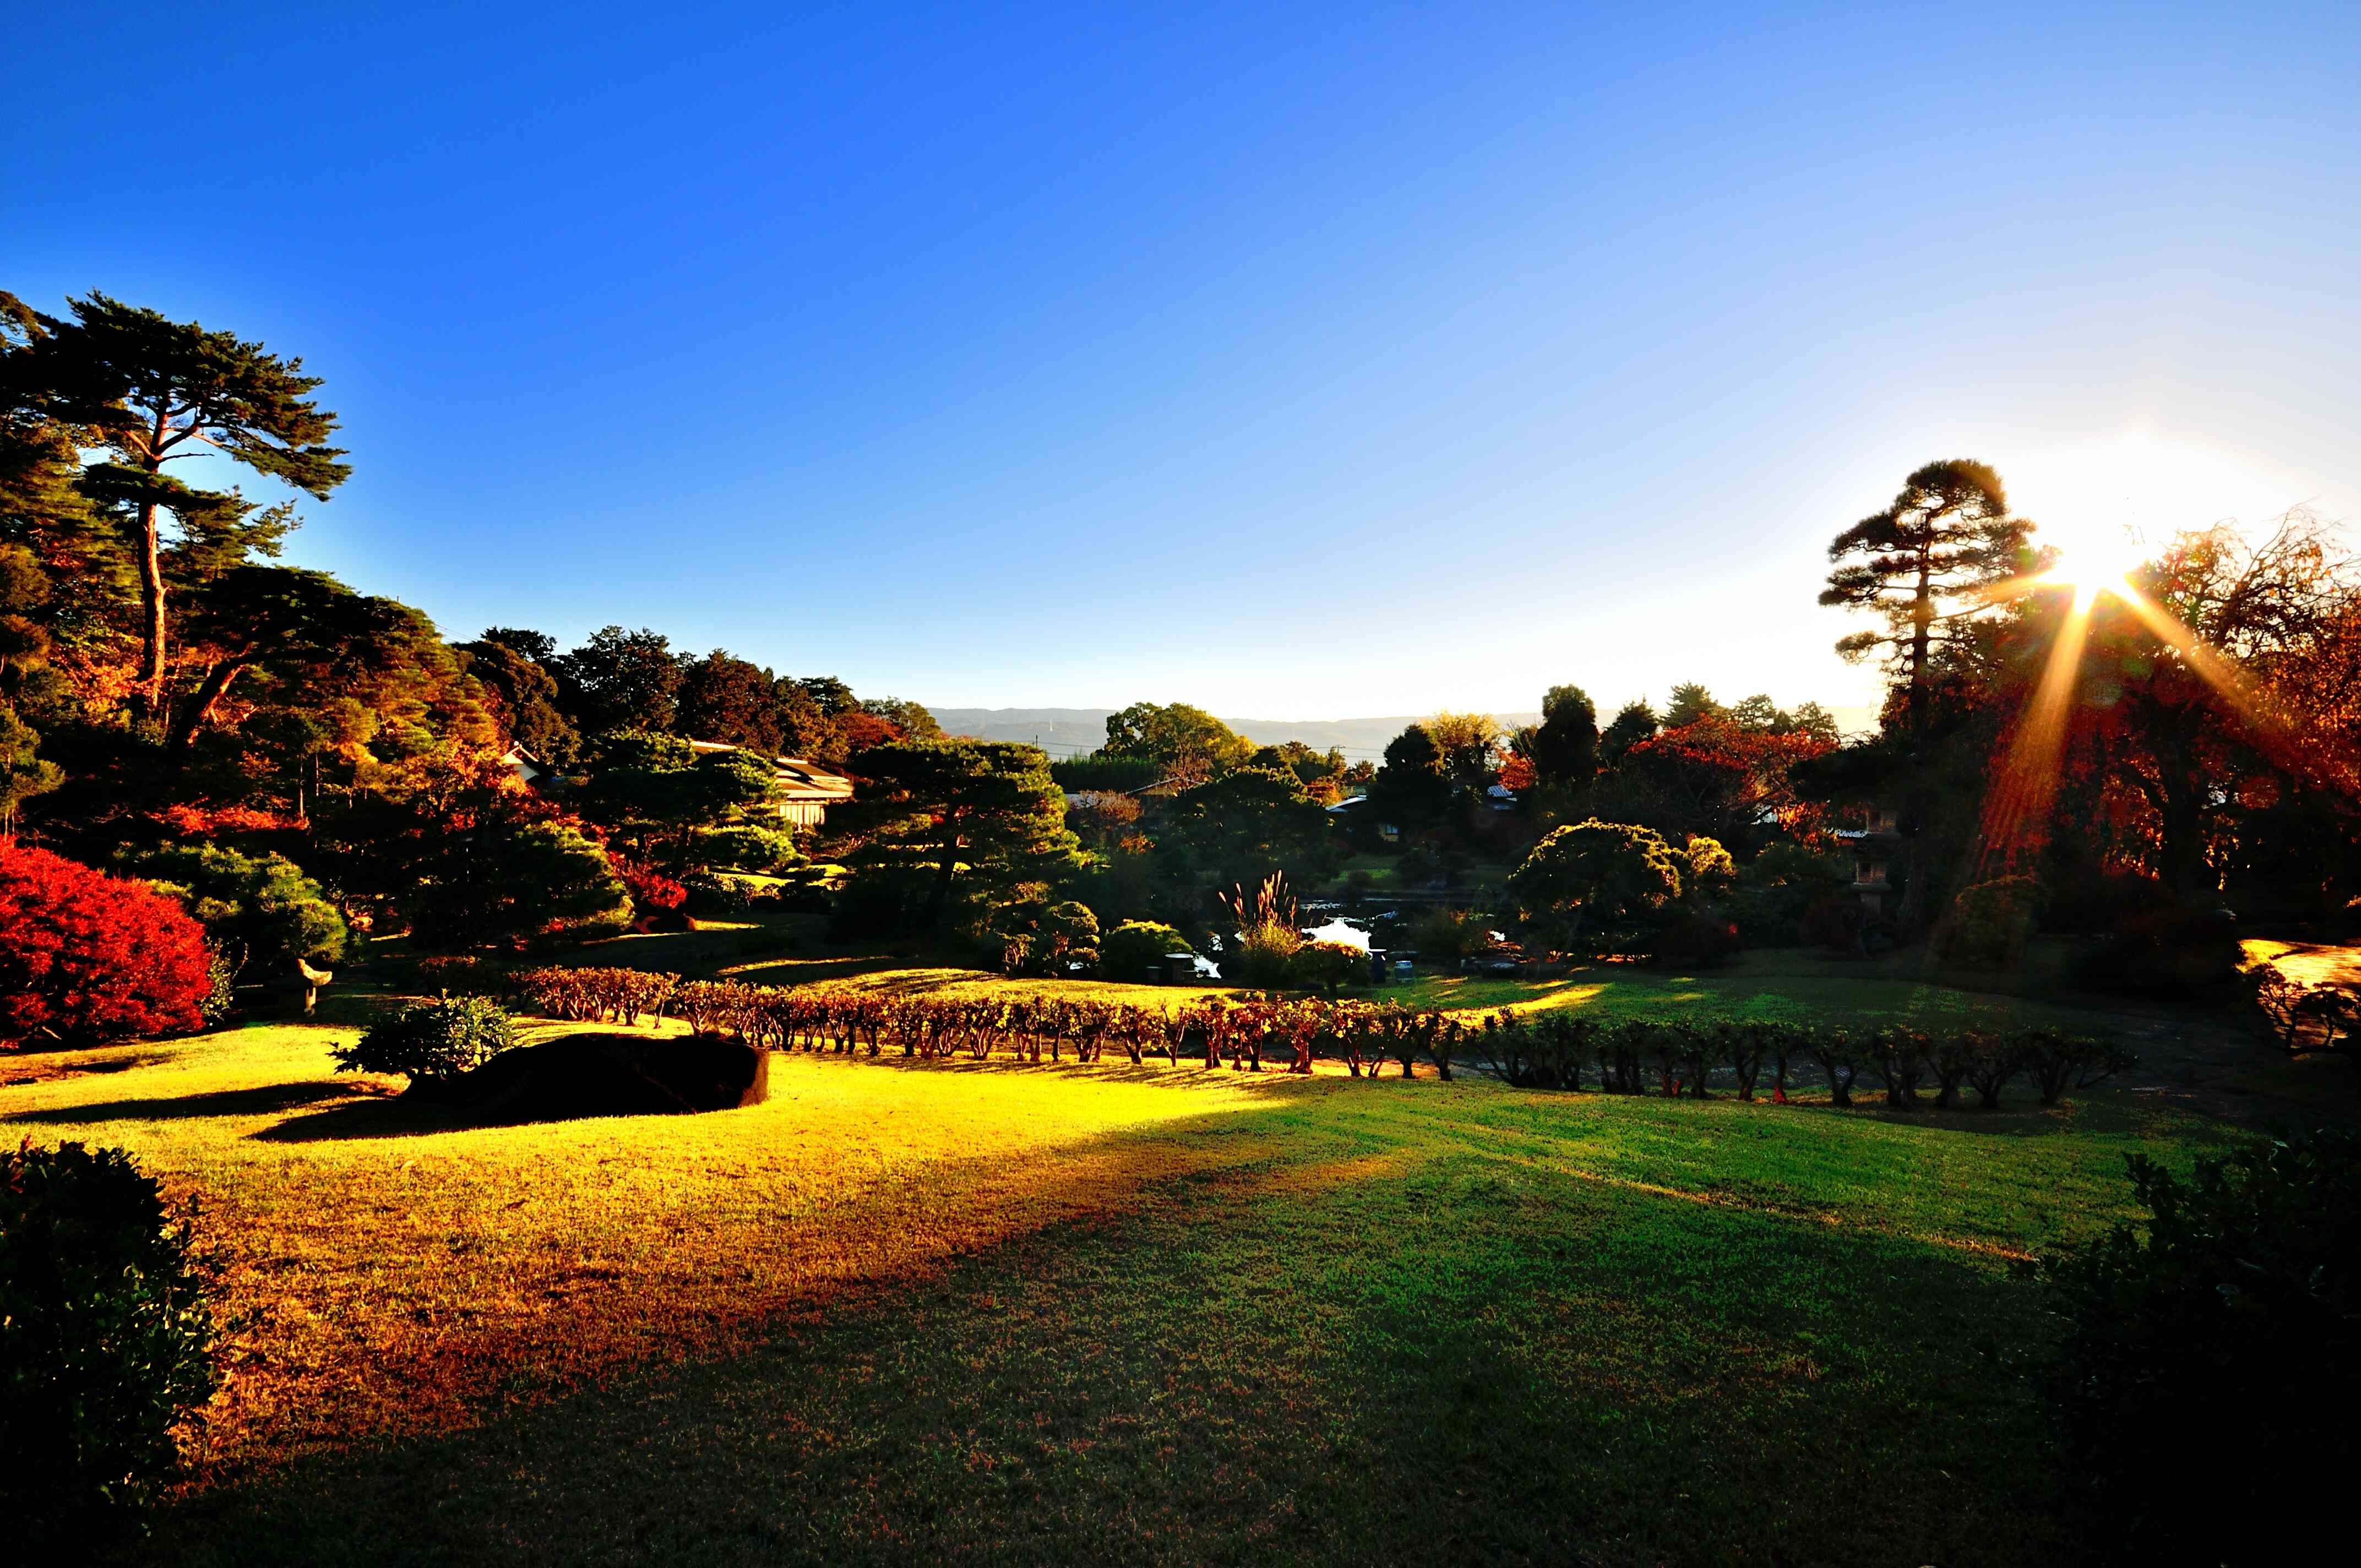 約3，000坪の日本庭園
時間帯・季節によって異なった景色がご覧いただけます